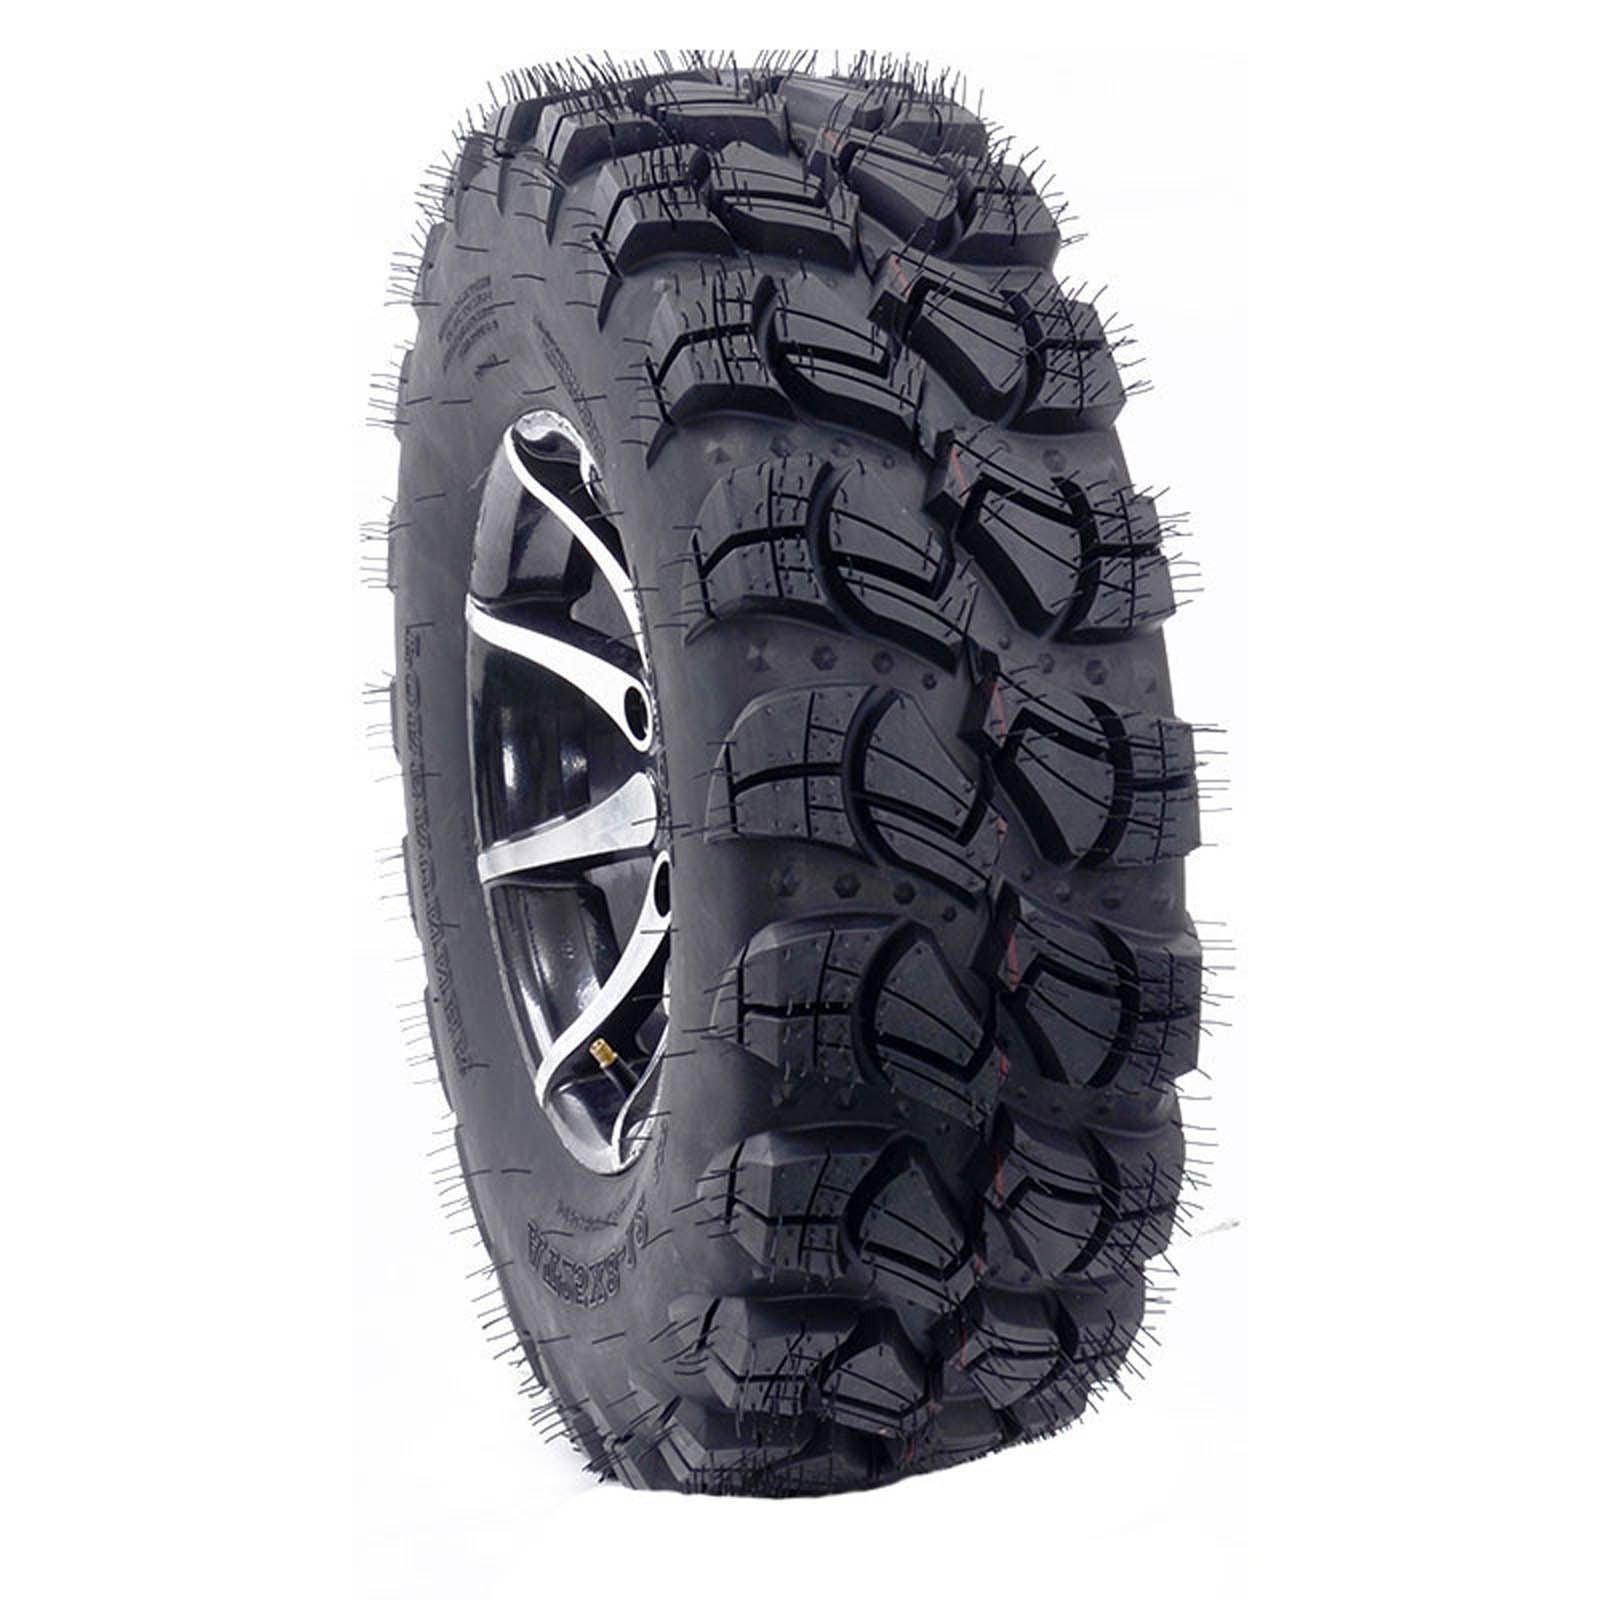 New FOREUNNER Victory ATV Tyre 25x8x12 6pr TL #12X25X8VICTORY